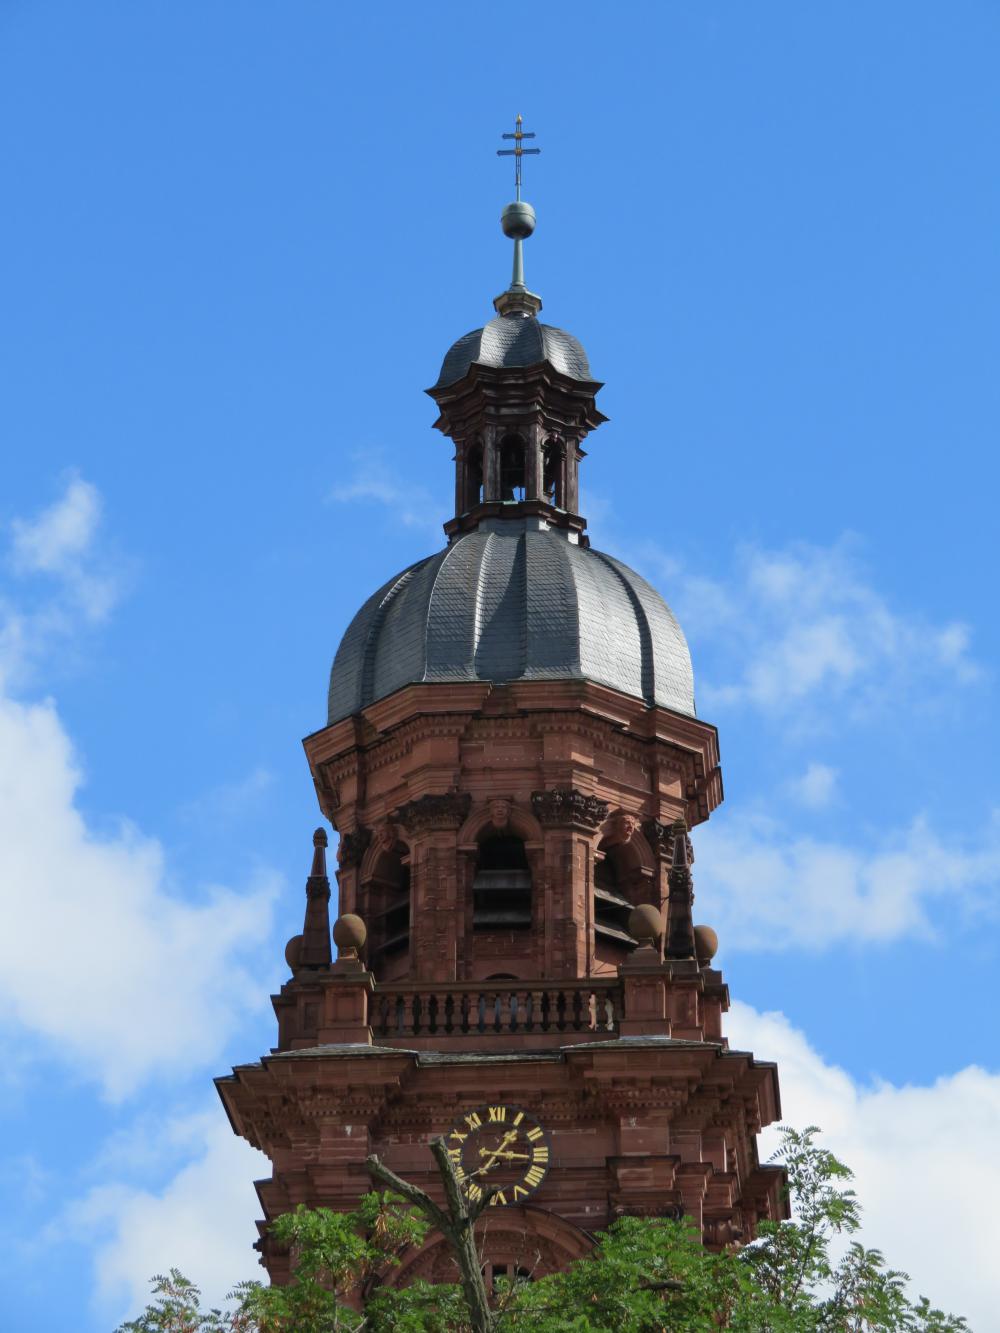 Neubaukirche with dome and lantern (Wikipedia, Wol